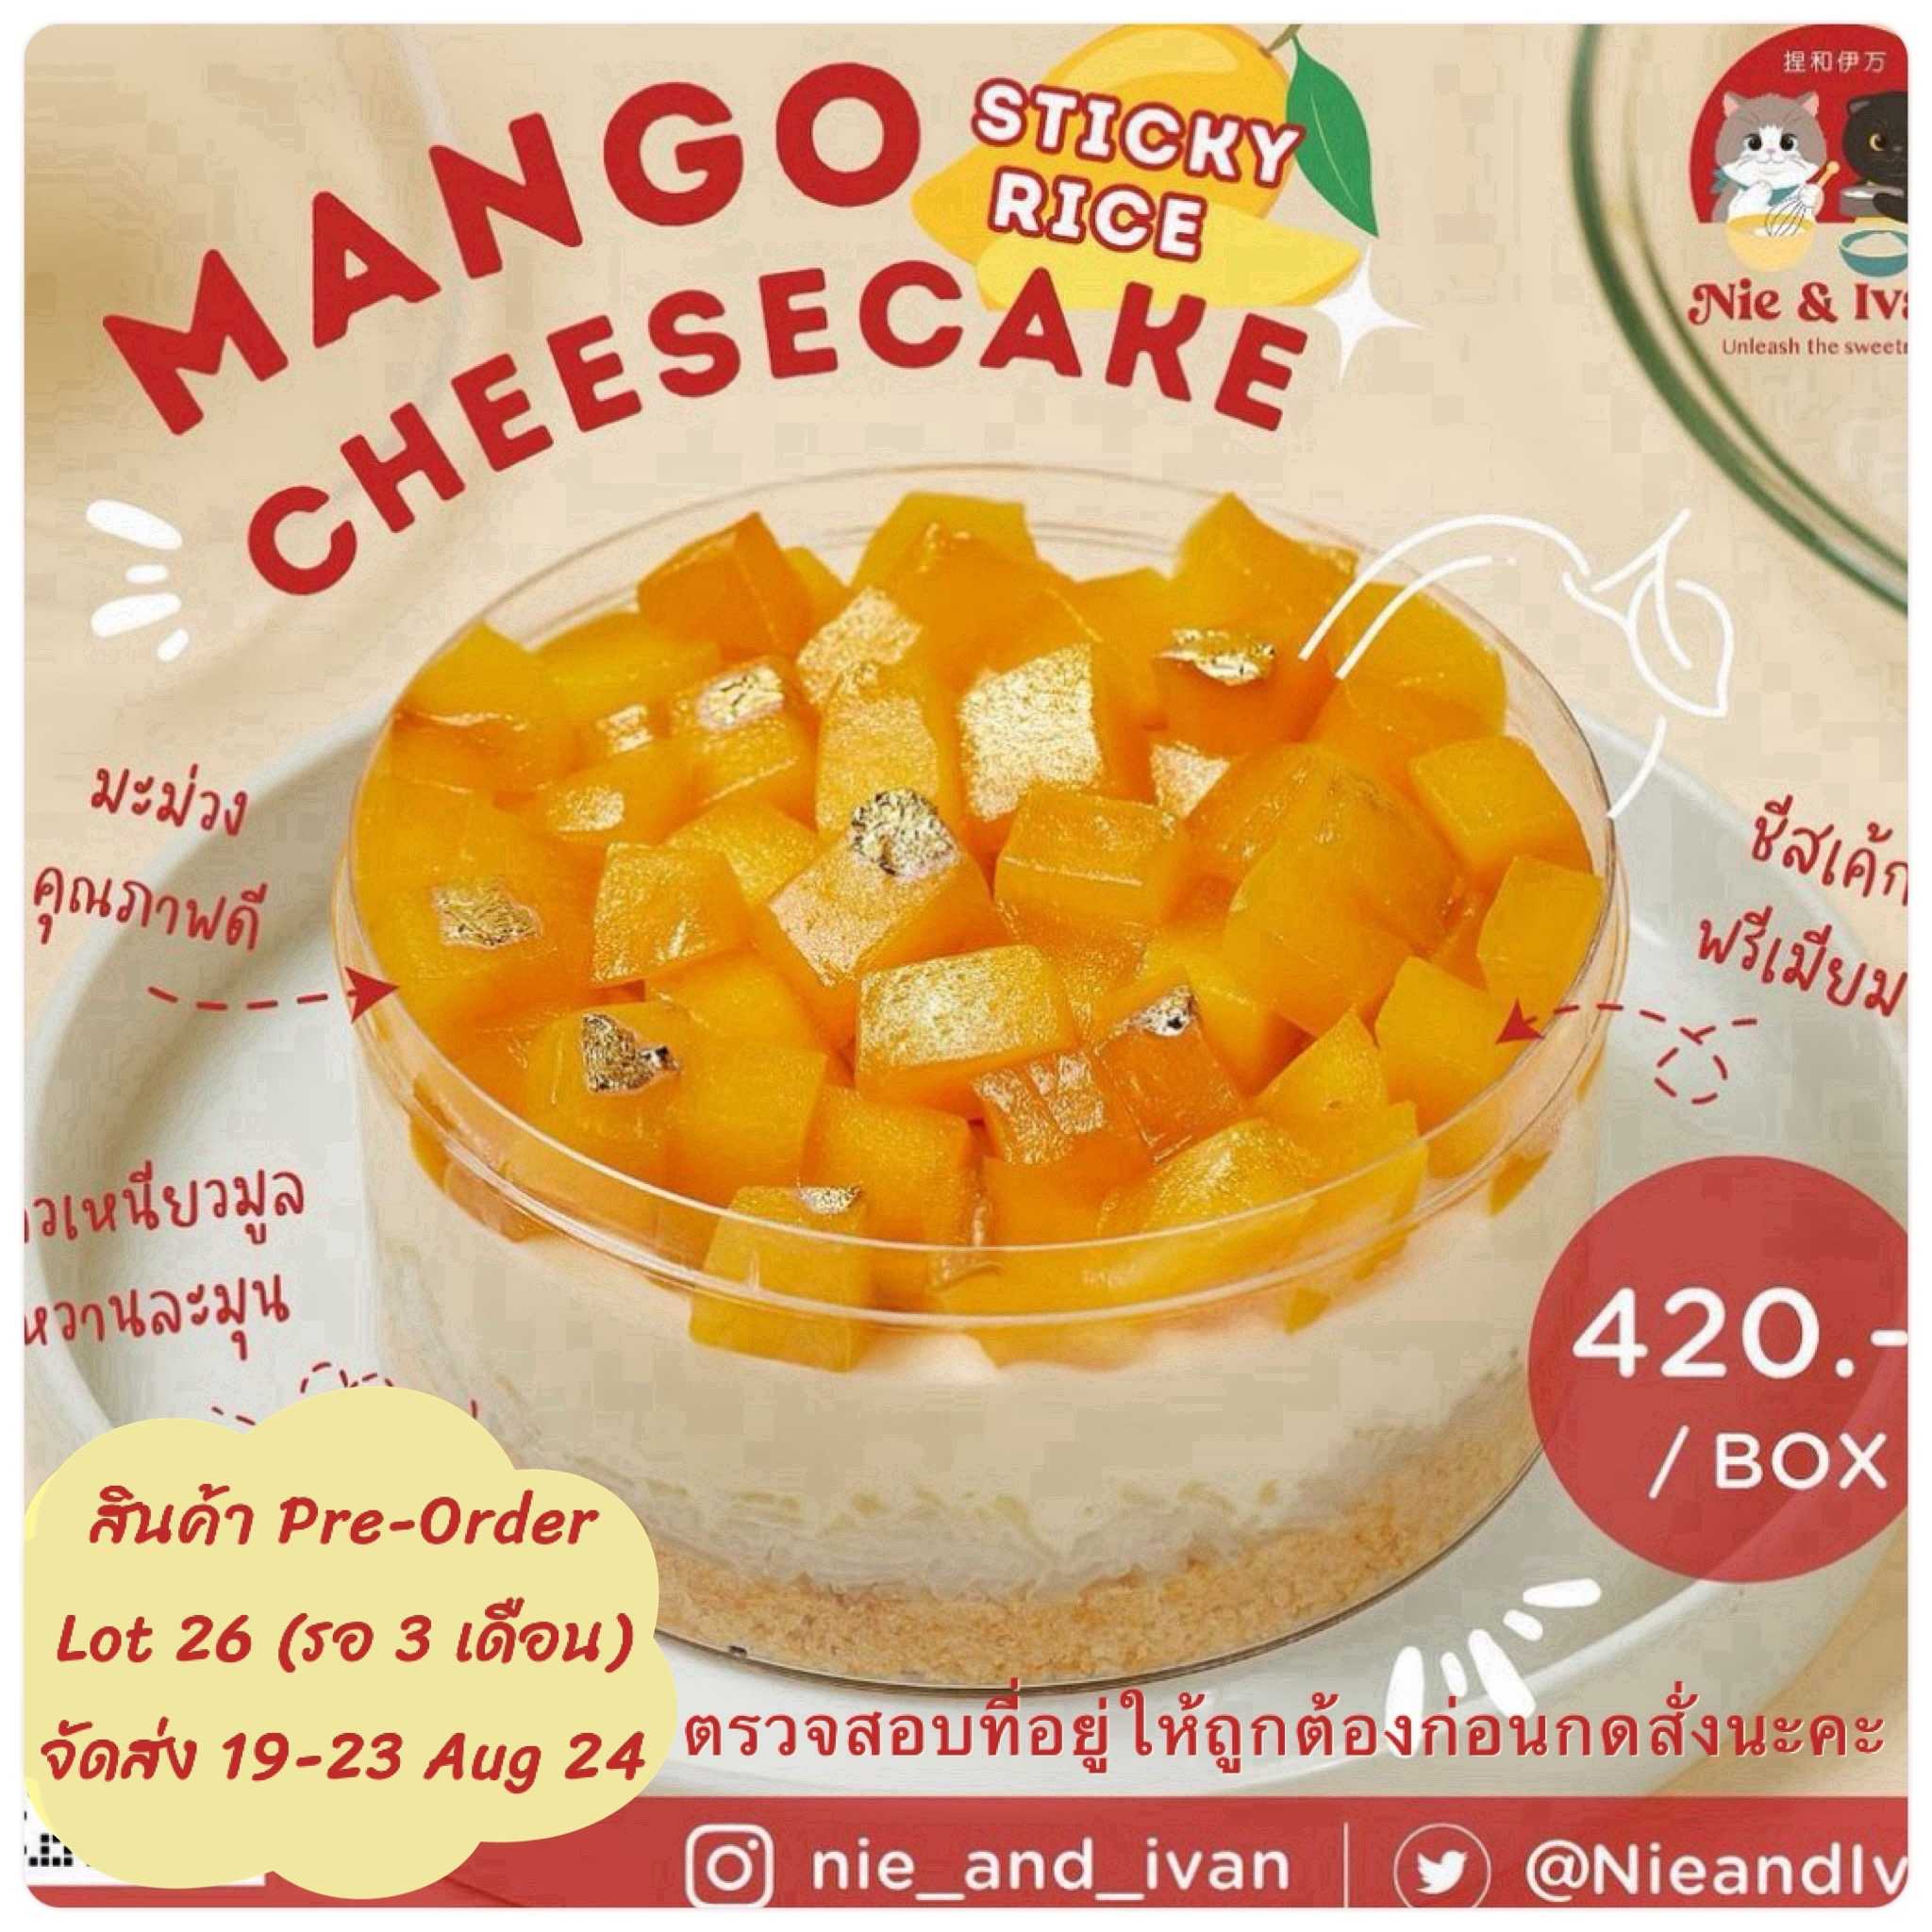 Mango sticky rice cheesecake Lot26 (จัดส่งวันที่ 19-23 สิงหาคม) ขนมยอดนิยม